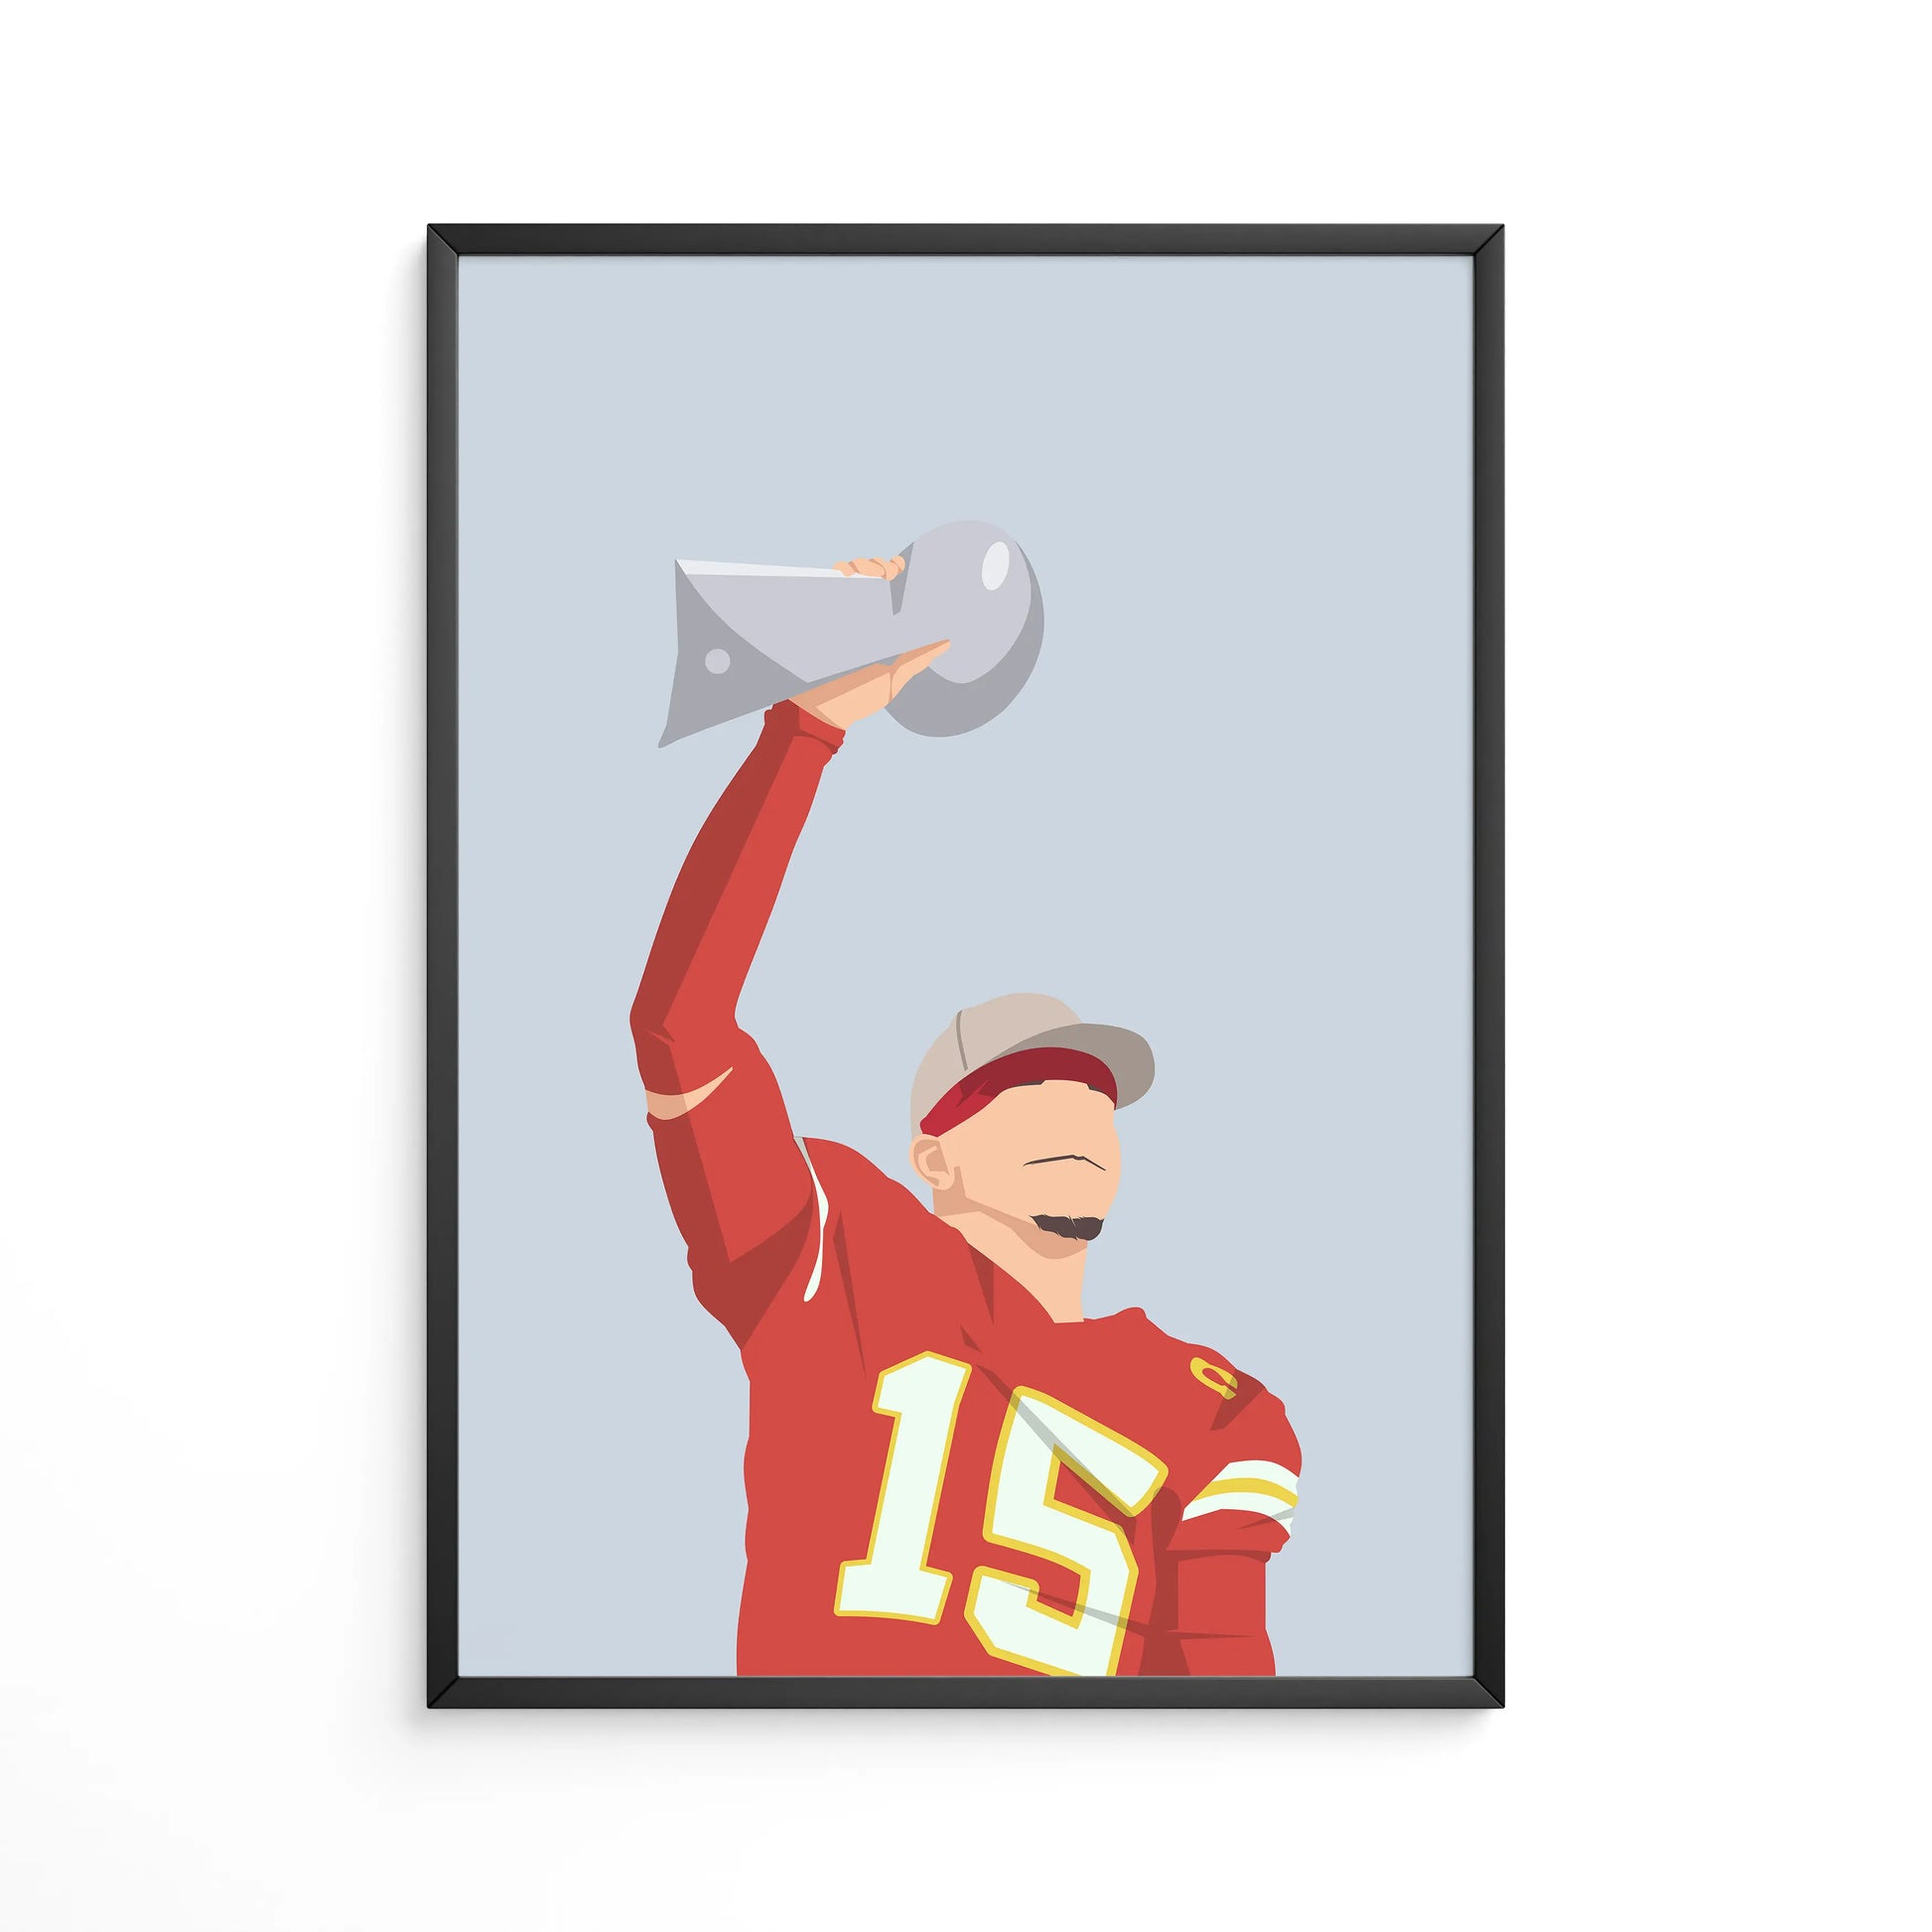 Poster von Patrick Mahomes, nachdem er den Super Bowl LVIII gewonnen hat. Auf dieser Illustration reckt der Quarterback der Kansas City Chiefs gerade die Vince Lombardi Trophy in die Höhe. Die Grafik von Mahomes befindet sich auf einem grauen Hintergrund, dazu ist das Poster in einem schwarzen Metallrahmen.